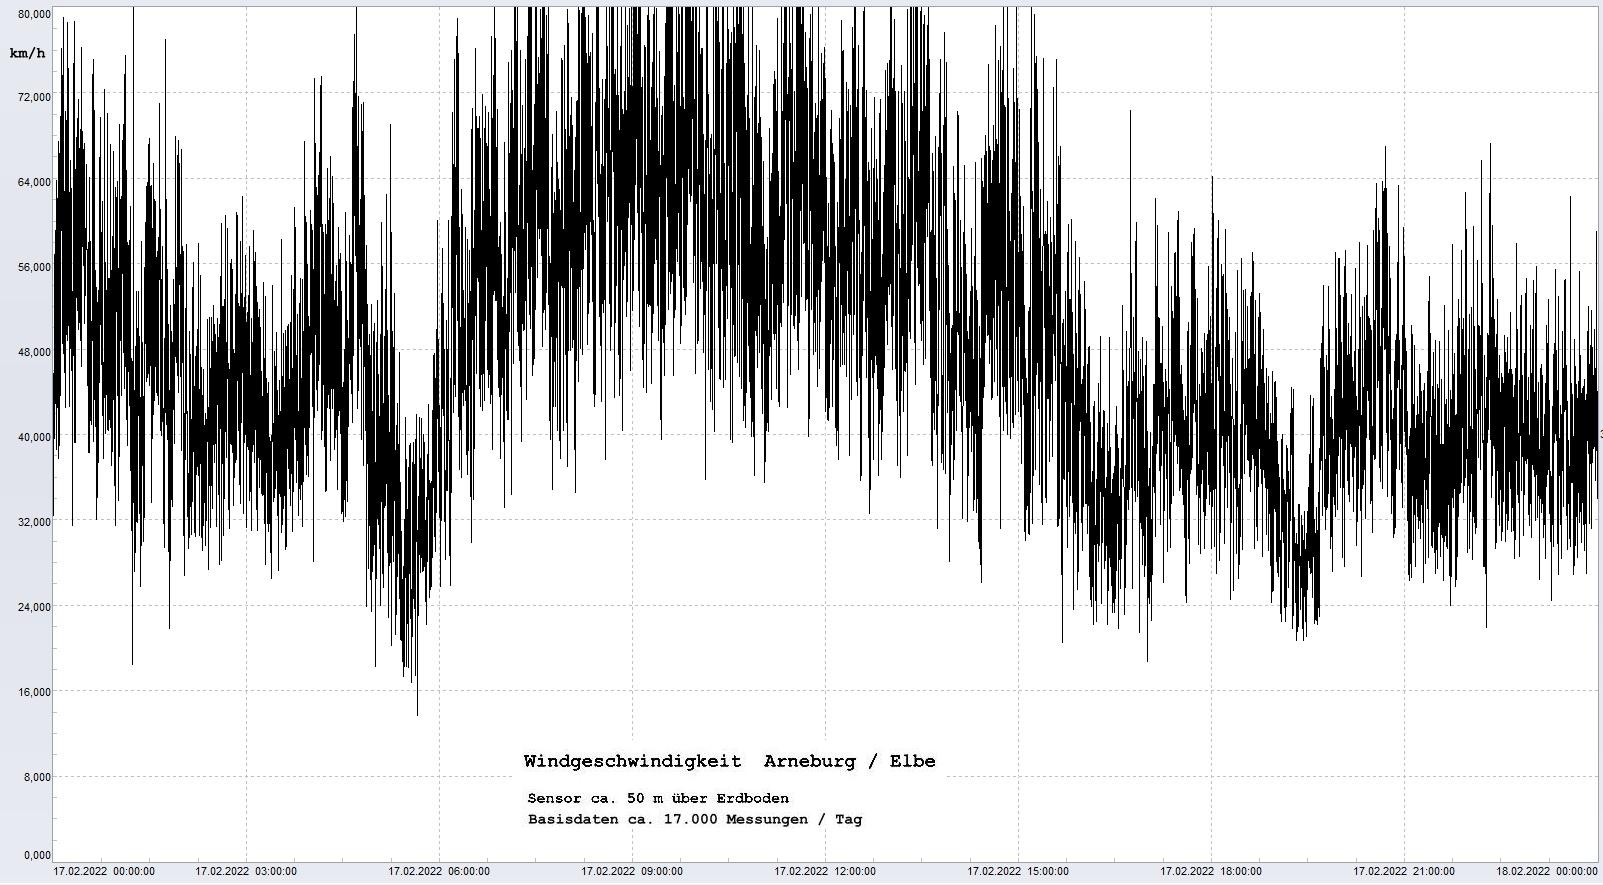 Arneburg Tages-Diagramm Winddaten, 17.02.2022
  Diagramm, Sensor auf Gebude, ca. 50 m ber Erdboden, Basis: 5s-Aufzeichnung